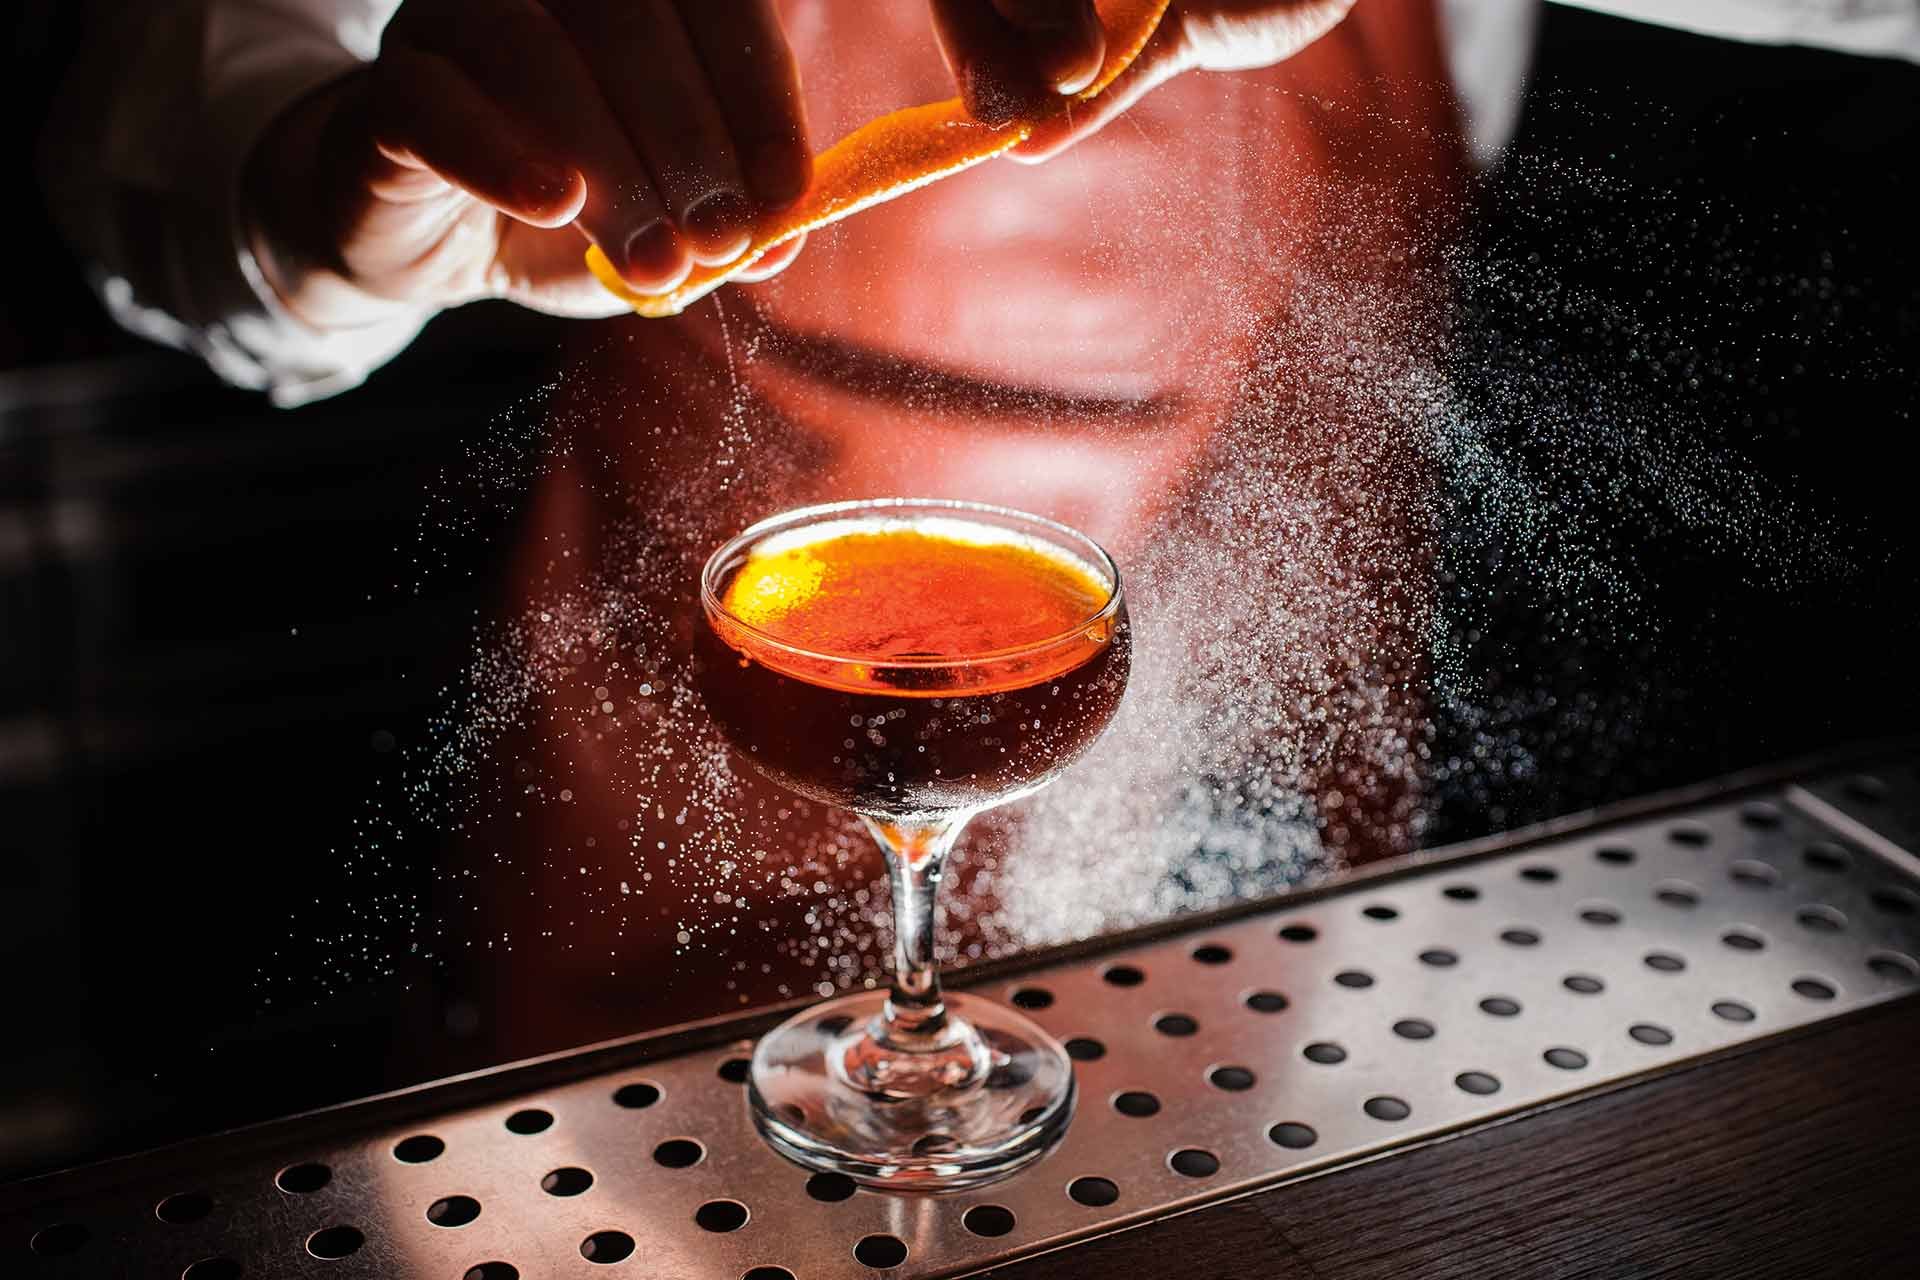 Hochwertige Cognacs oder spanische Brandys sind als Grundlage für außergewöhnliche Cocktails bestens geeignet.